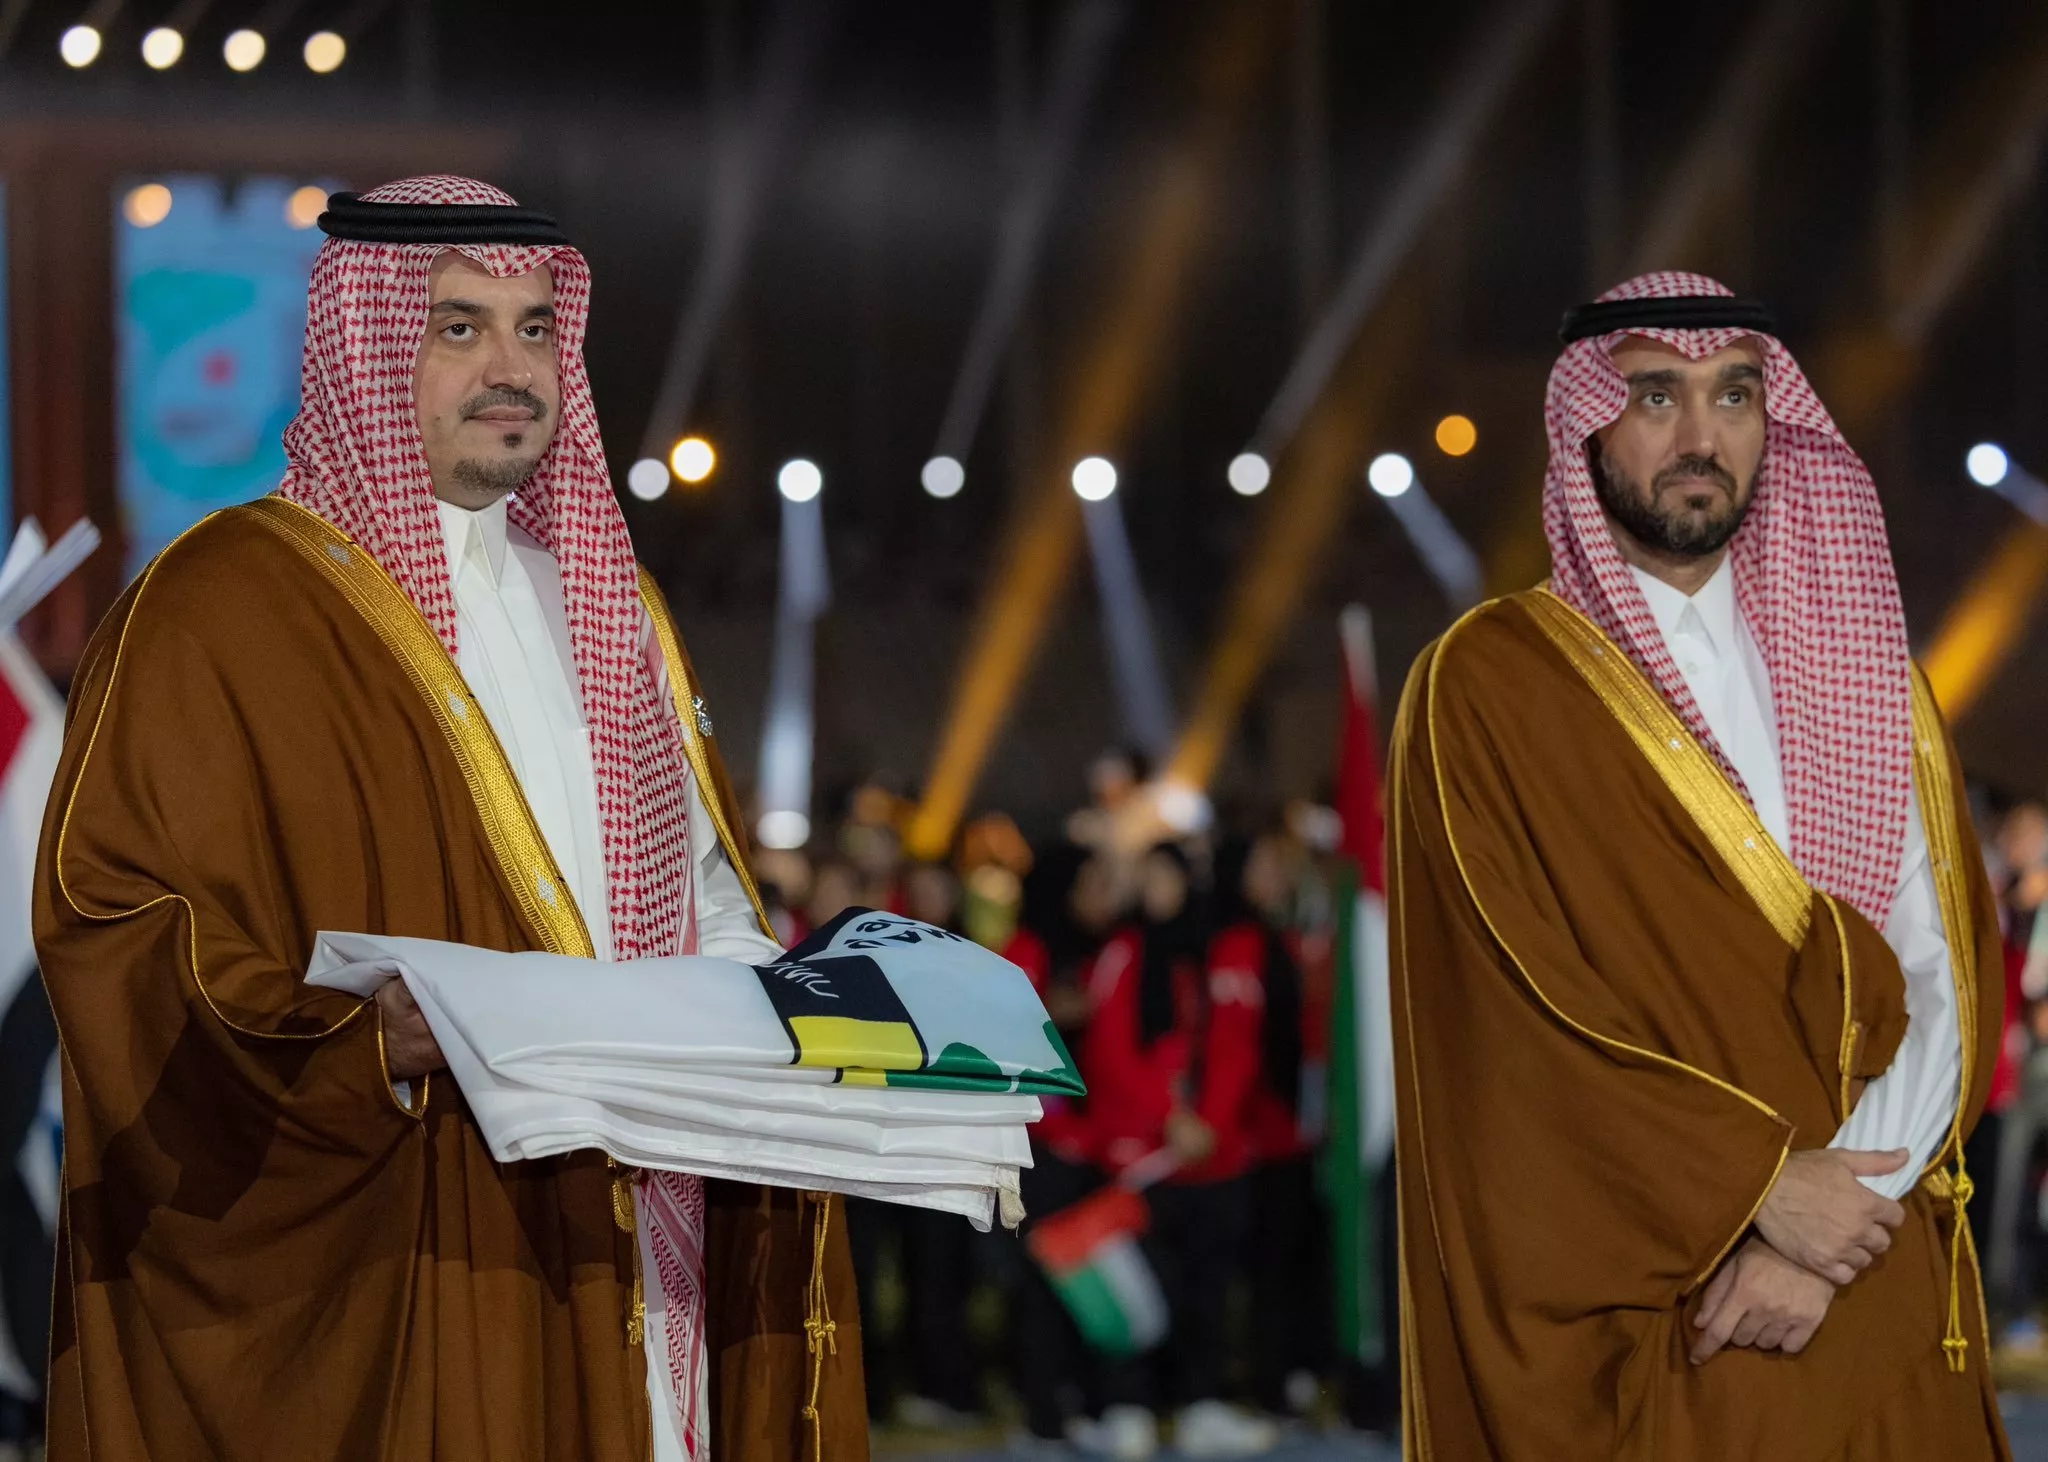 رسمياً، السعودية ستستضيف دورة الألعاب العربية في عام 2027